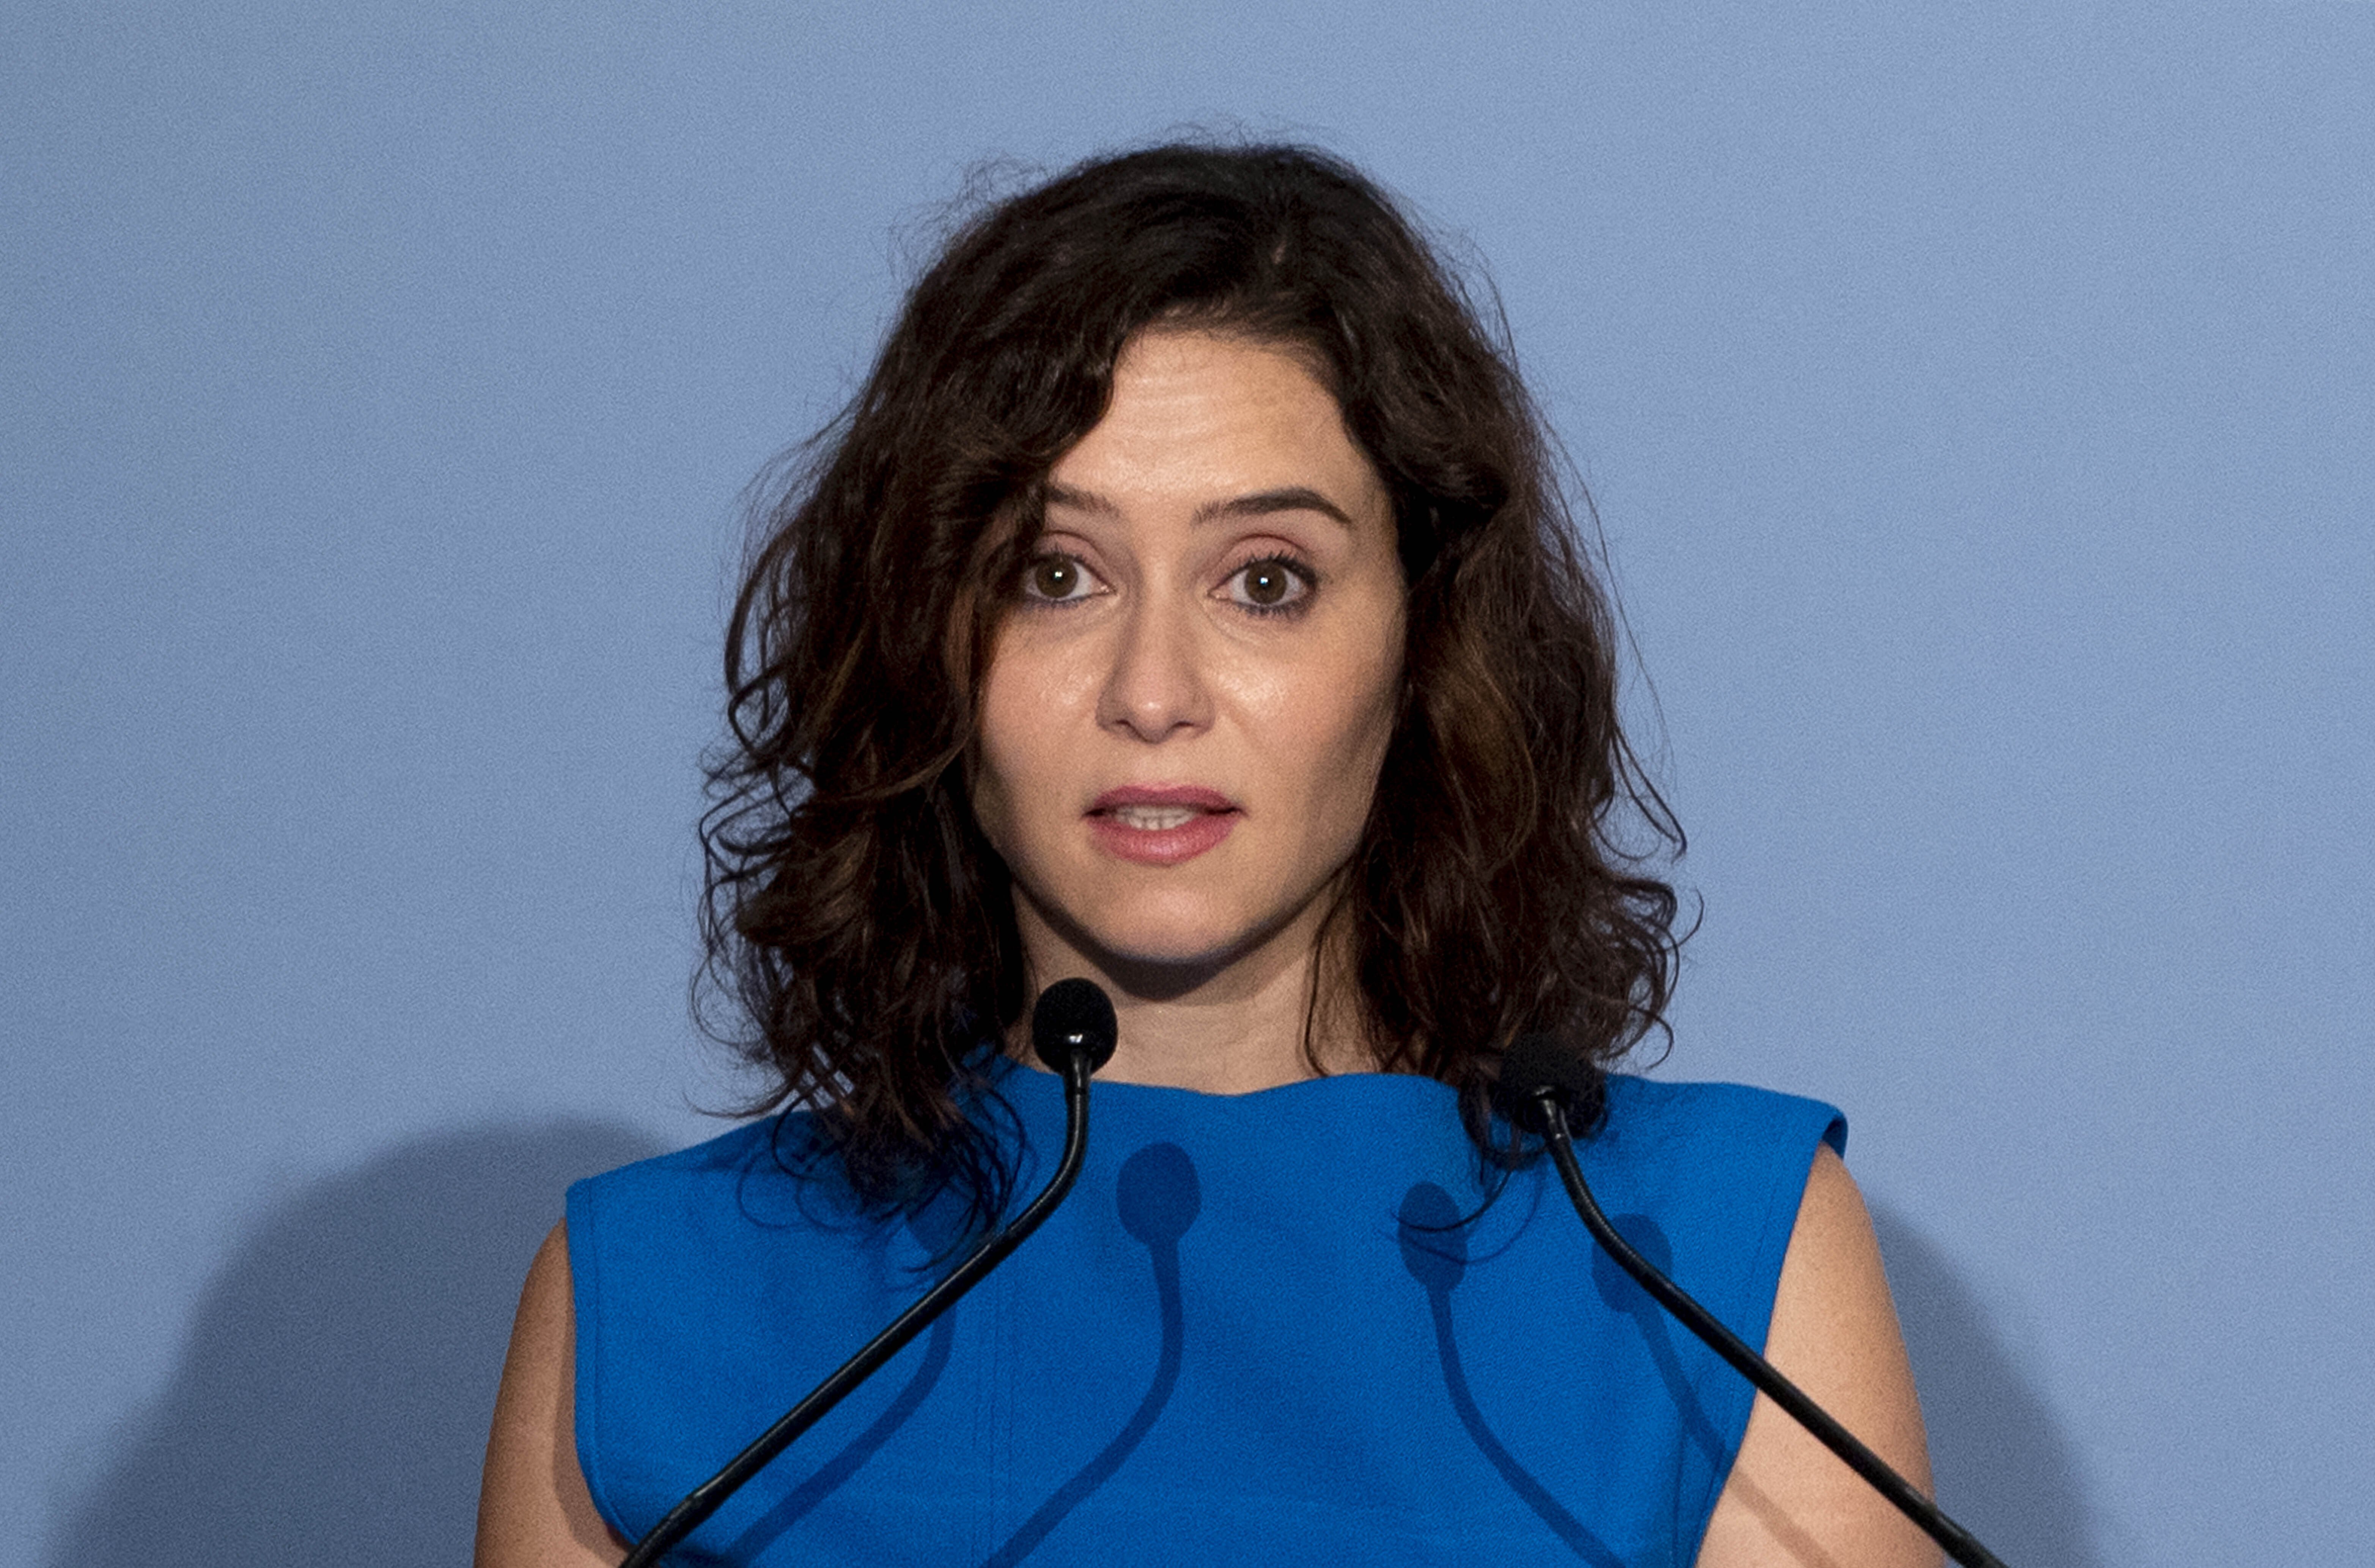 Isabel Díaz Ayuso després de la victòria de Meloni: “És el desastre dels socialistes”